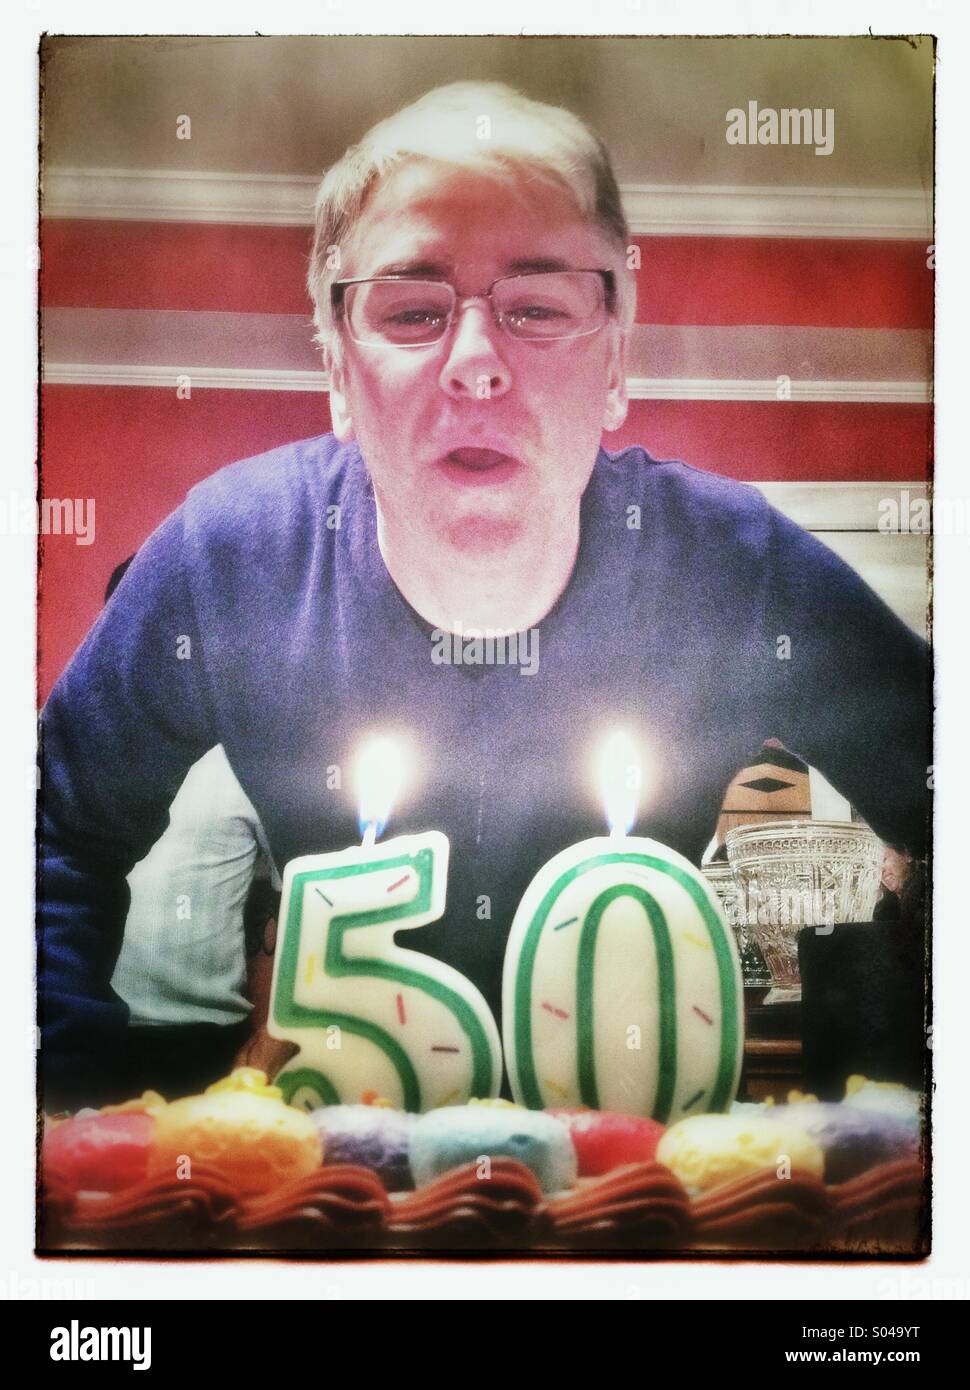 Homme de 50 ans à une fête d'anniversaire sur le point de souffler les bougies sur le gâteau Banque D'Images